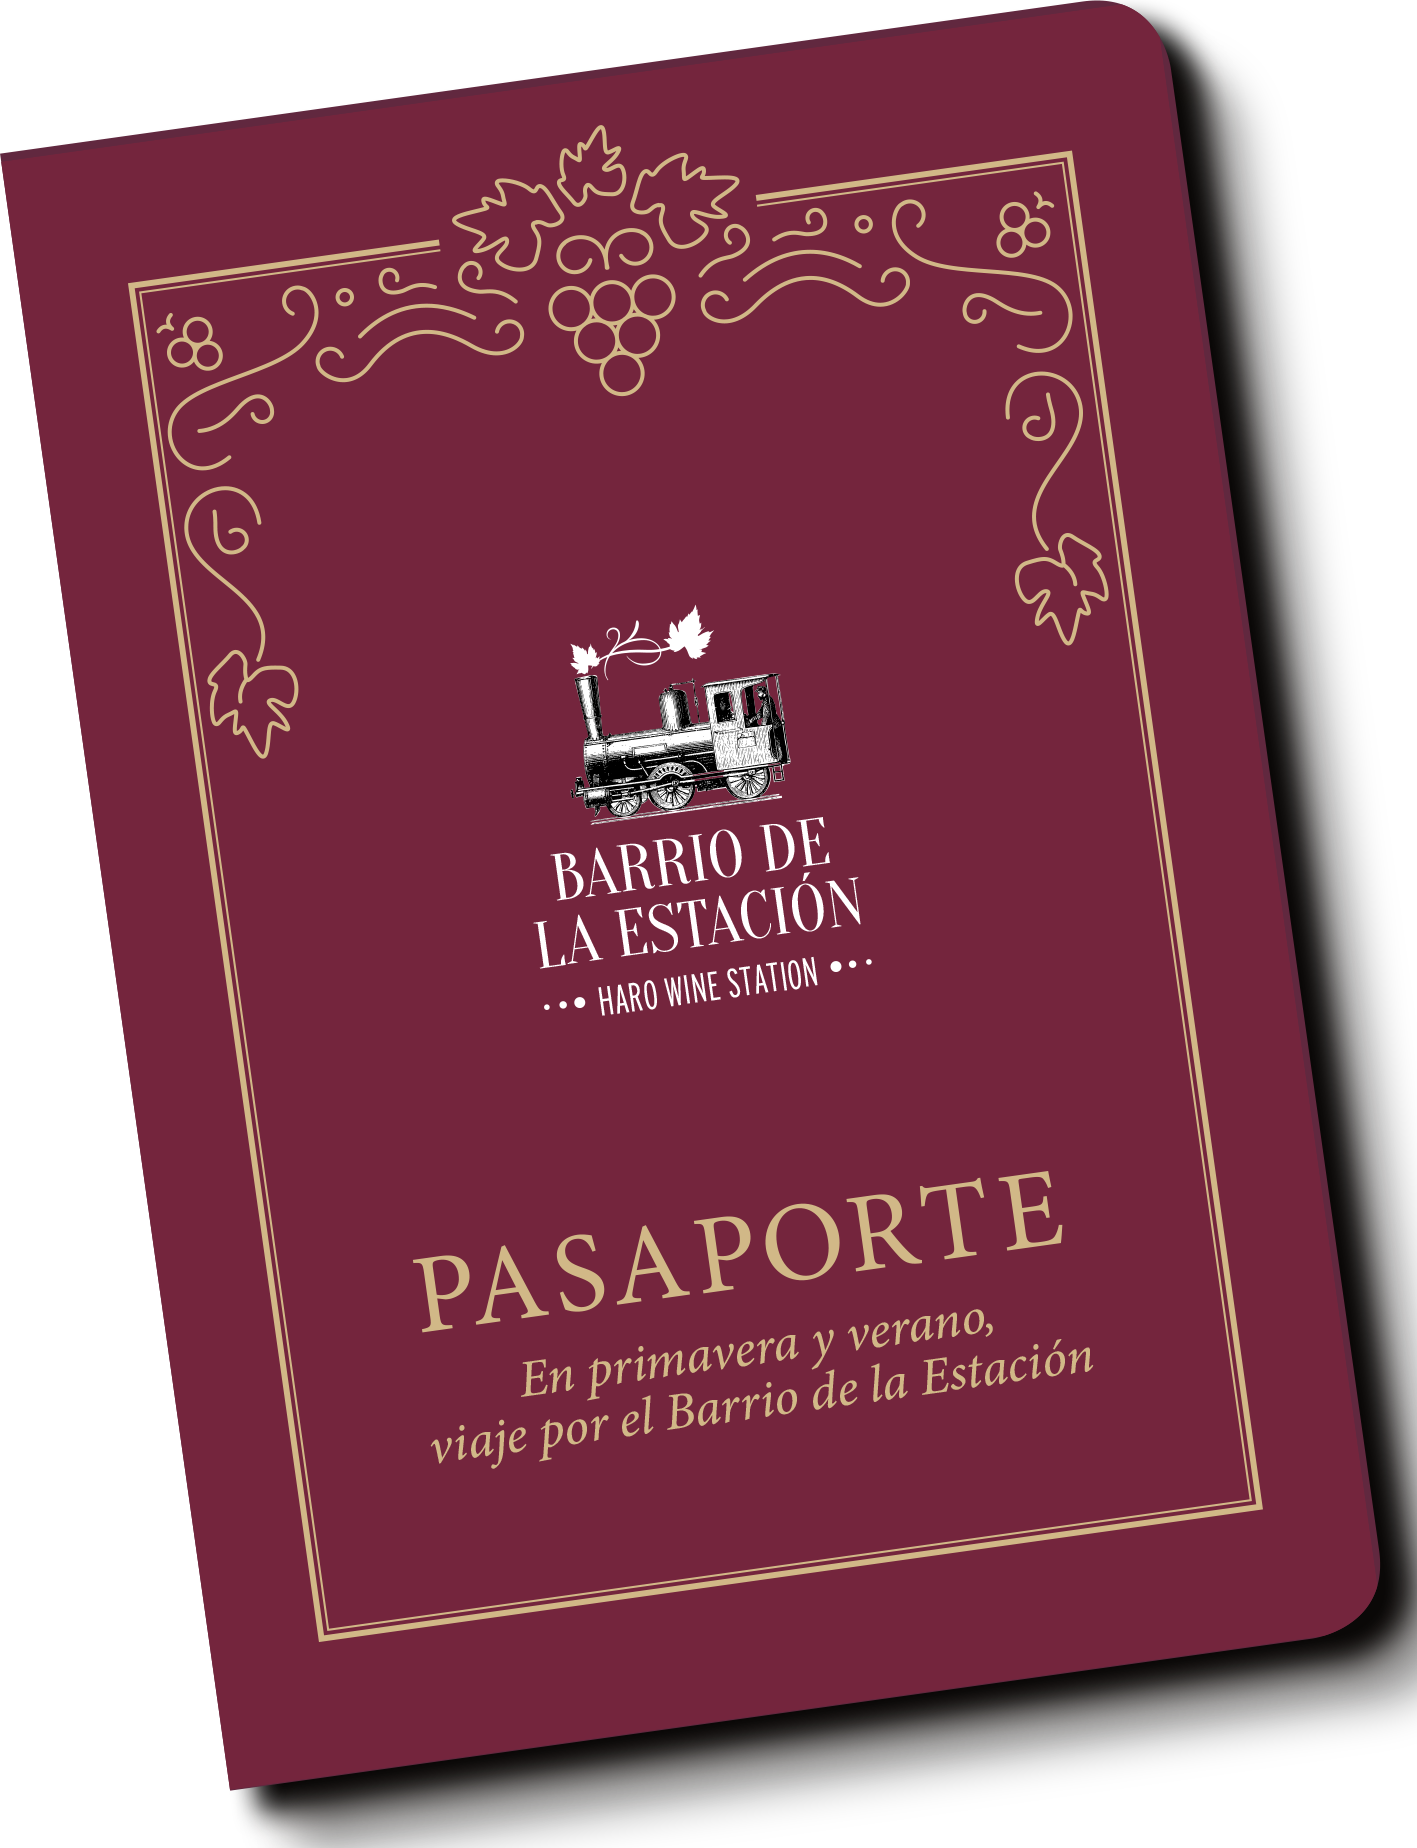 Rules of the draw Spring Passport Barrio de la Estación 2022